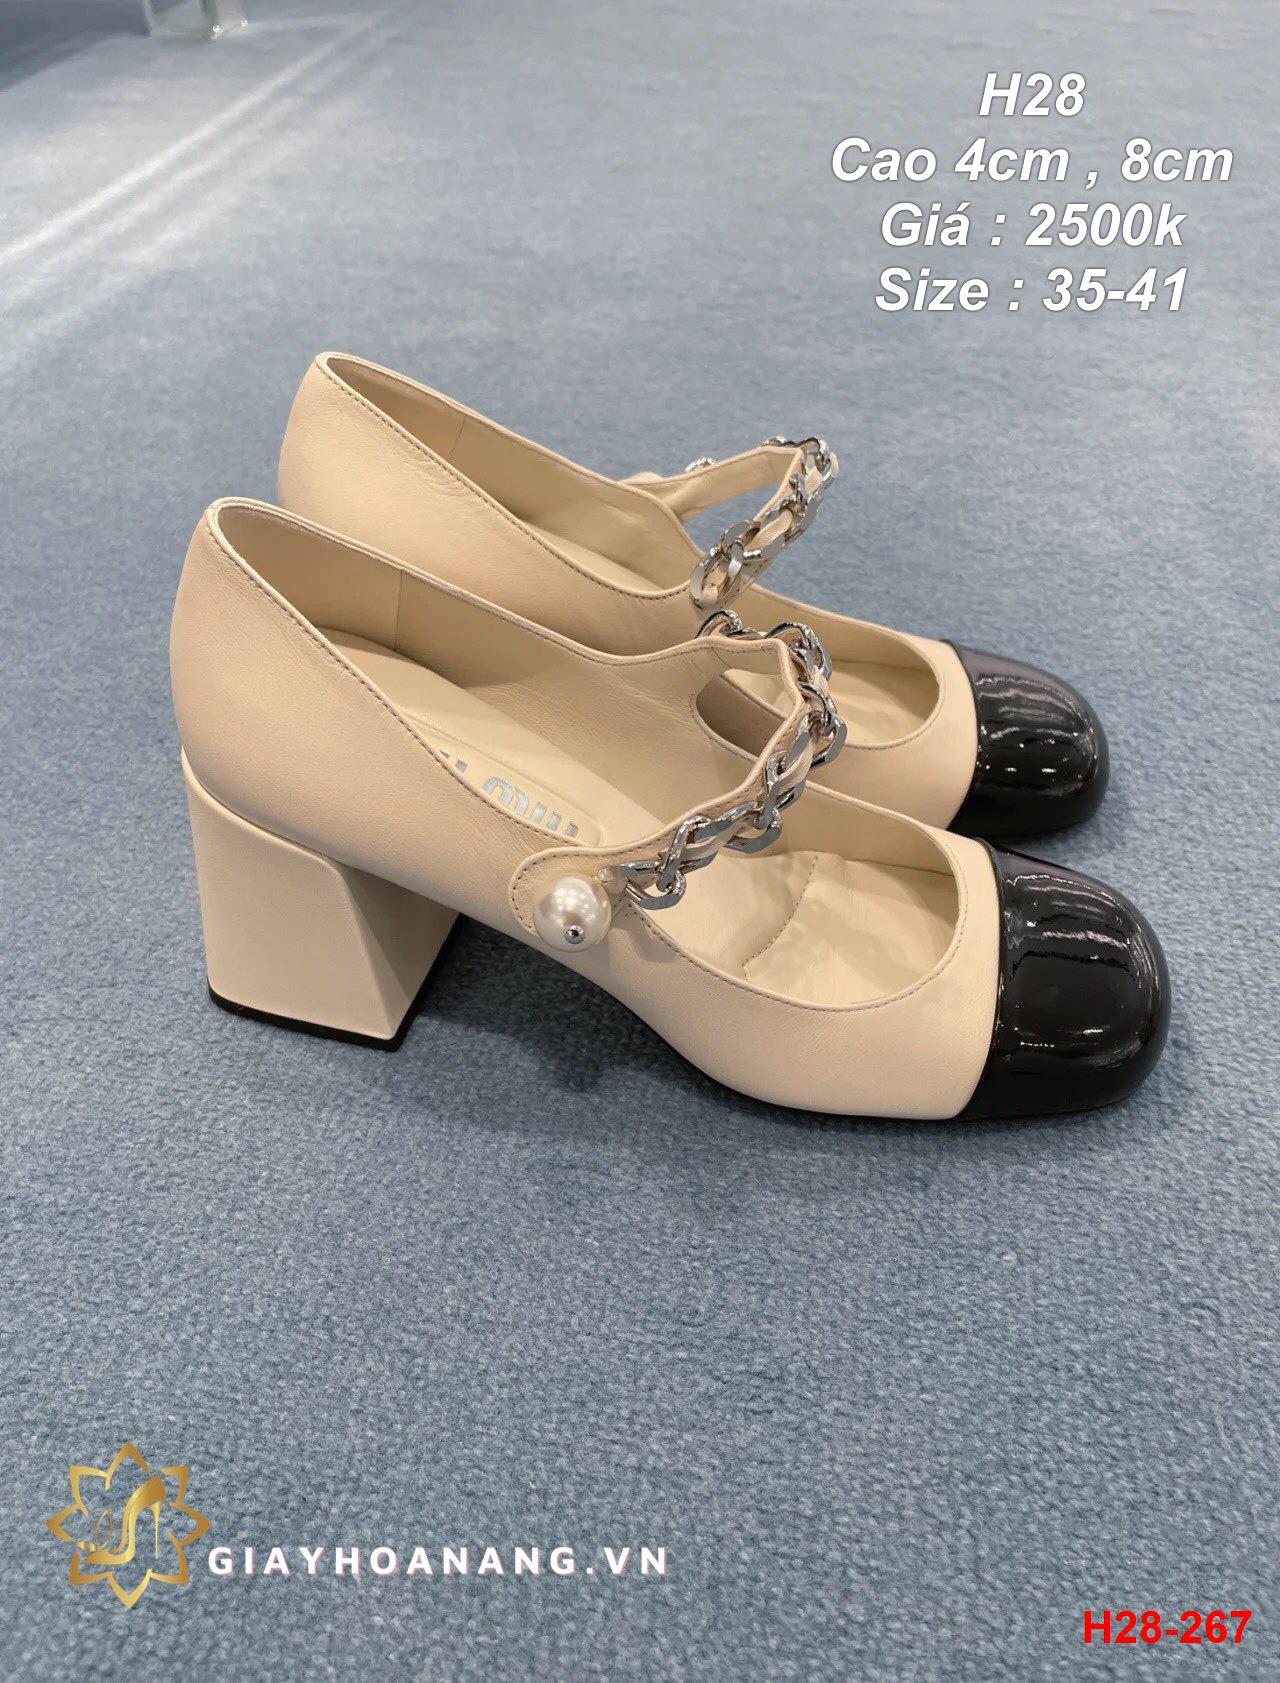 H28-267 Miu Miu sandal cao 4cm , 8cm siêu cấp